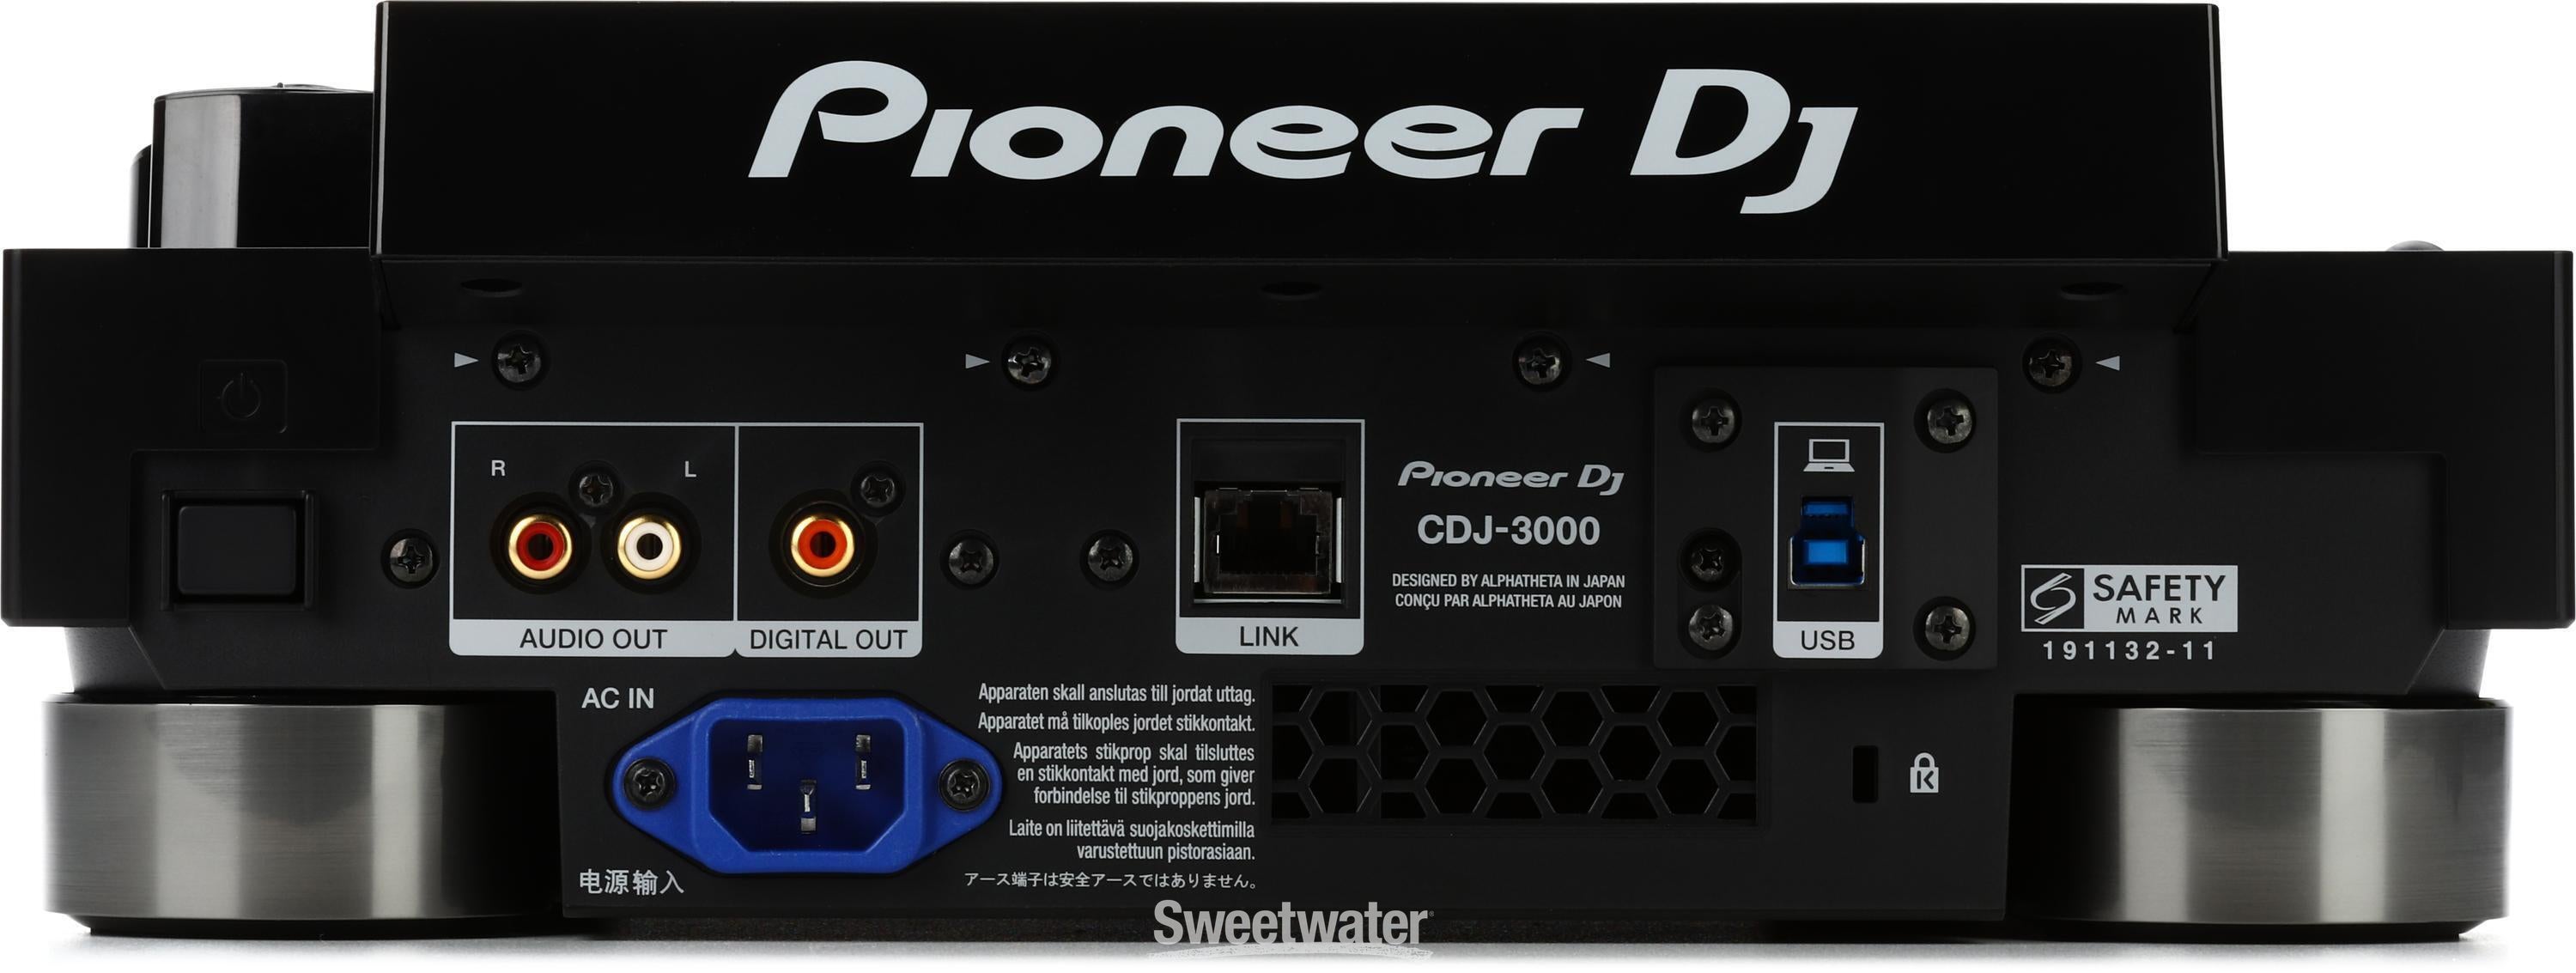 Pioneer DJ CDJ-3000 Professional DJ Media Player | Sweetwater